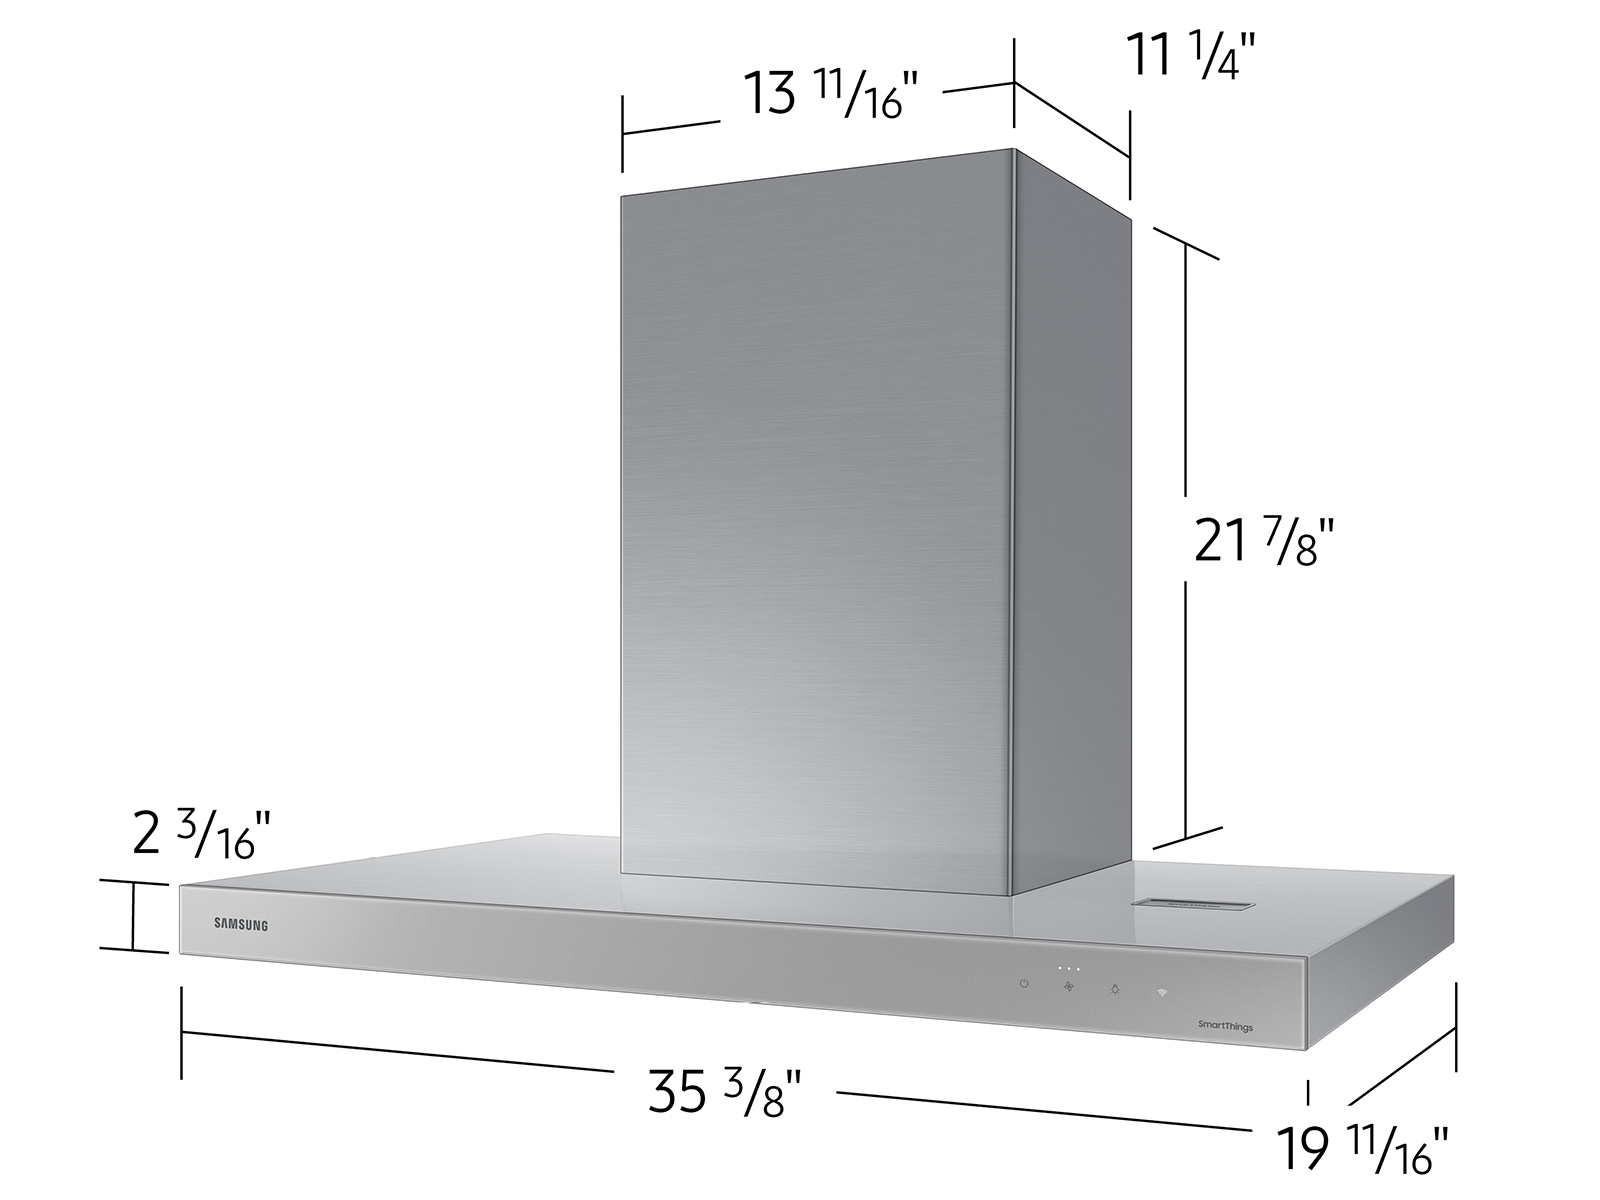 Standard range hood dimensions